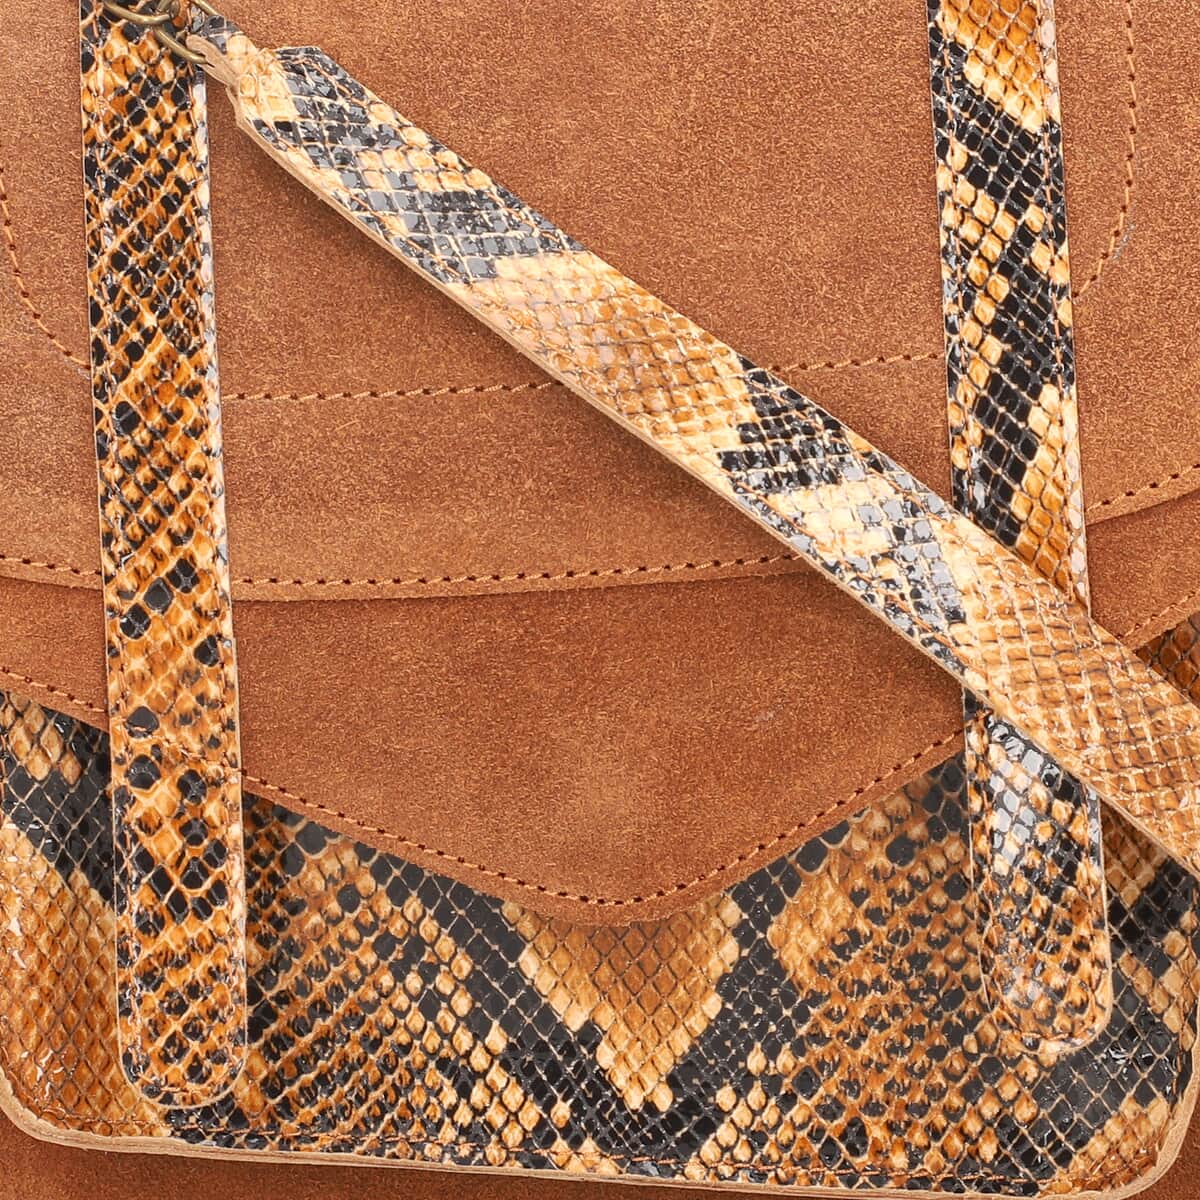 Black & Brown Snake Foil Print Genuine Leather Shoulder Bag (9"x3"x8") with Shoulder Strap & Handle Drops image number 7